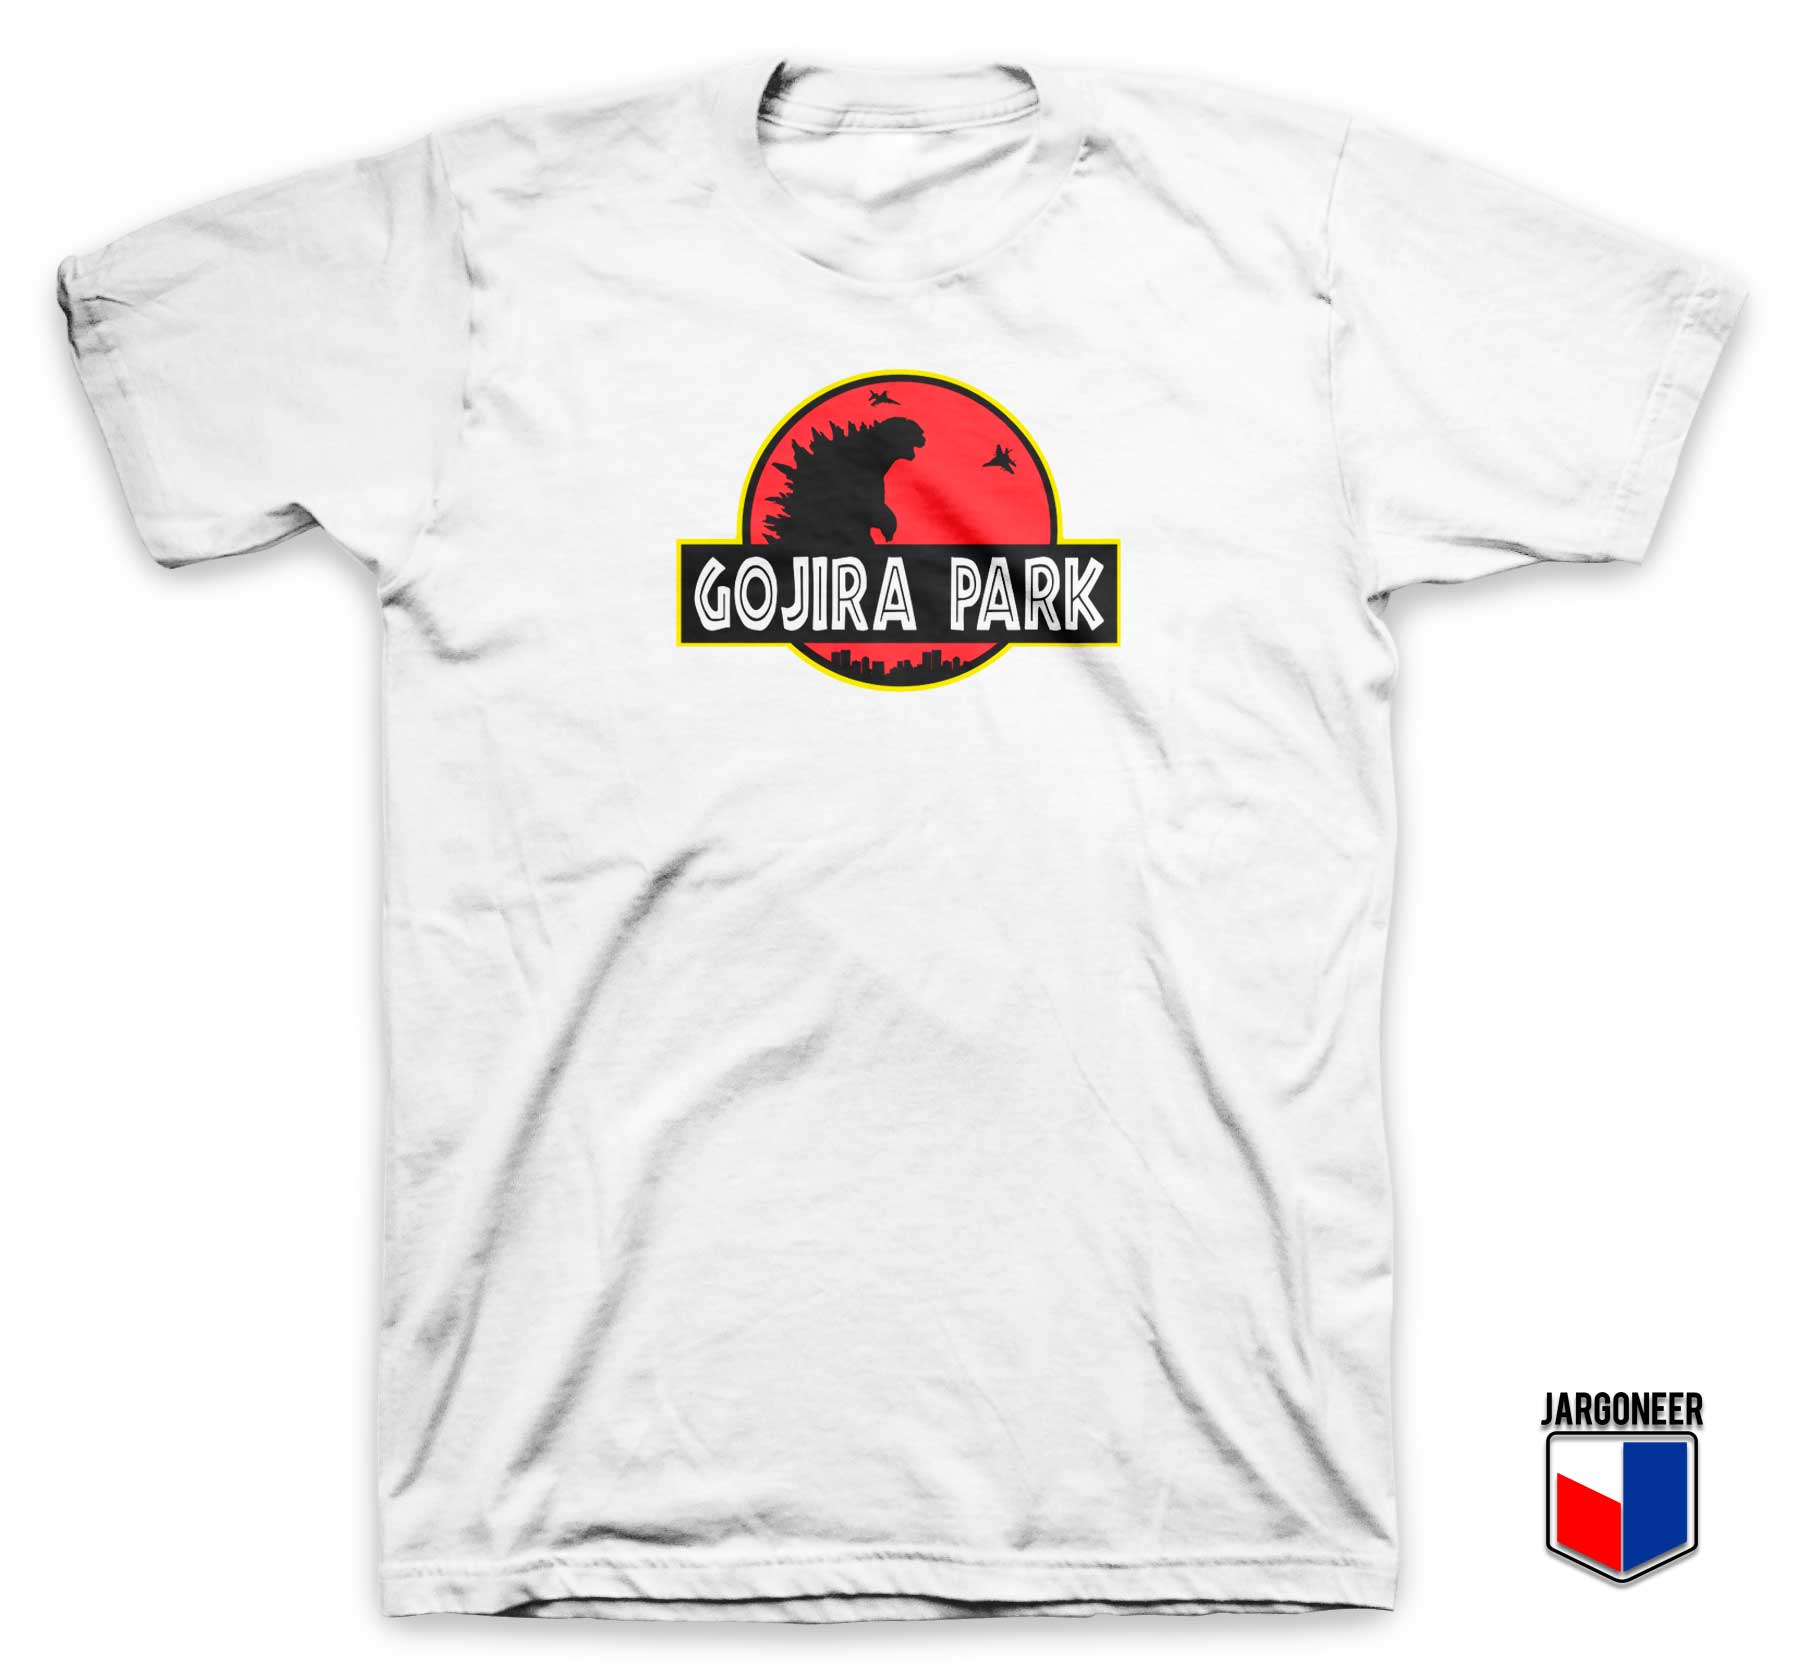 Gojira Park T Shirt - Shop Unique Graphic Cool Shirt Designs